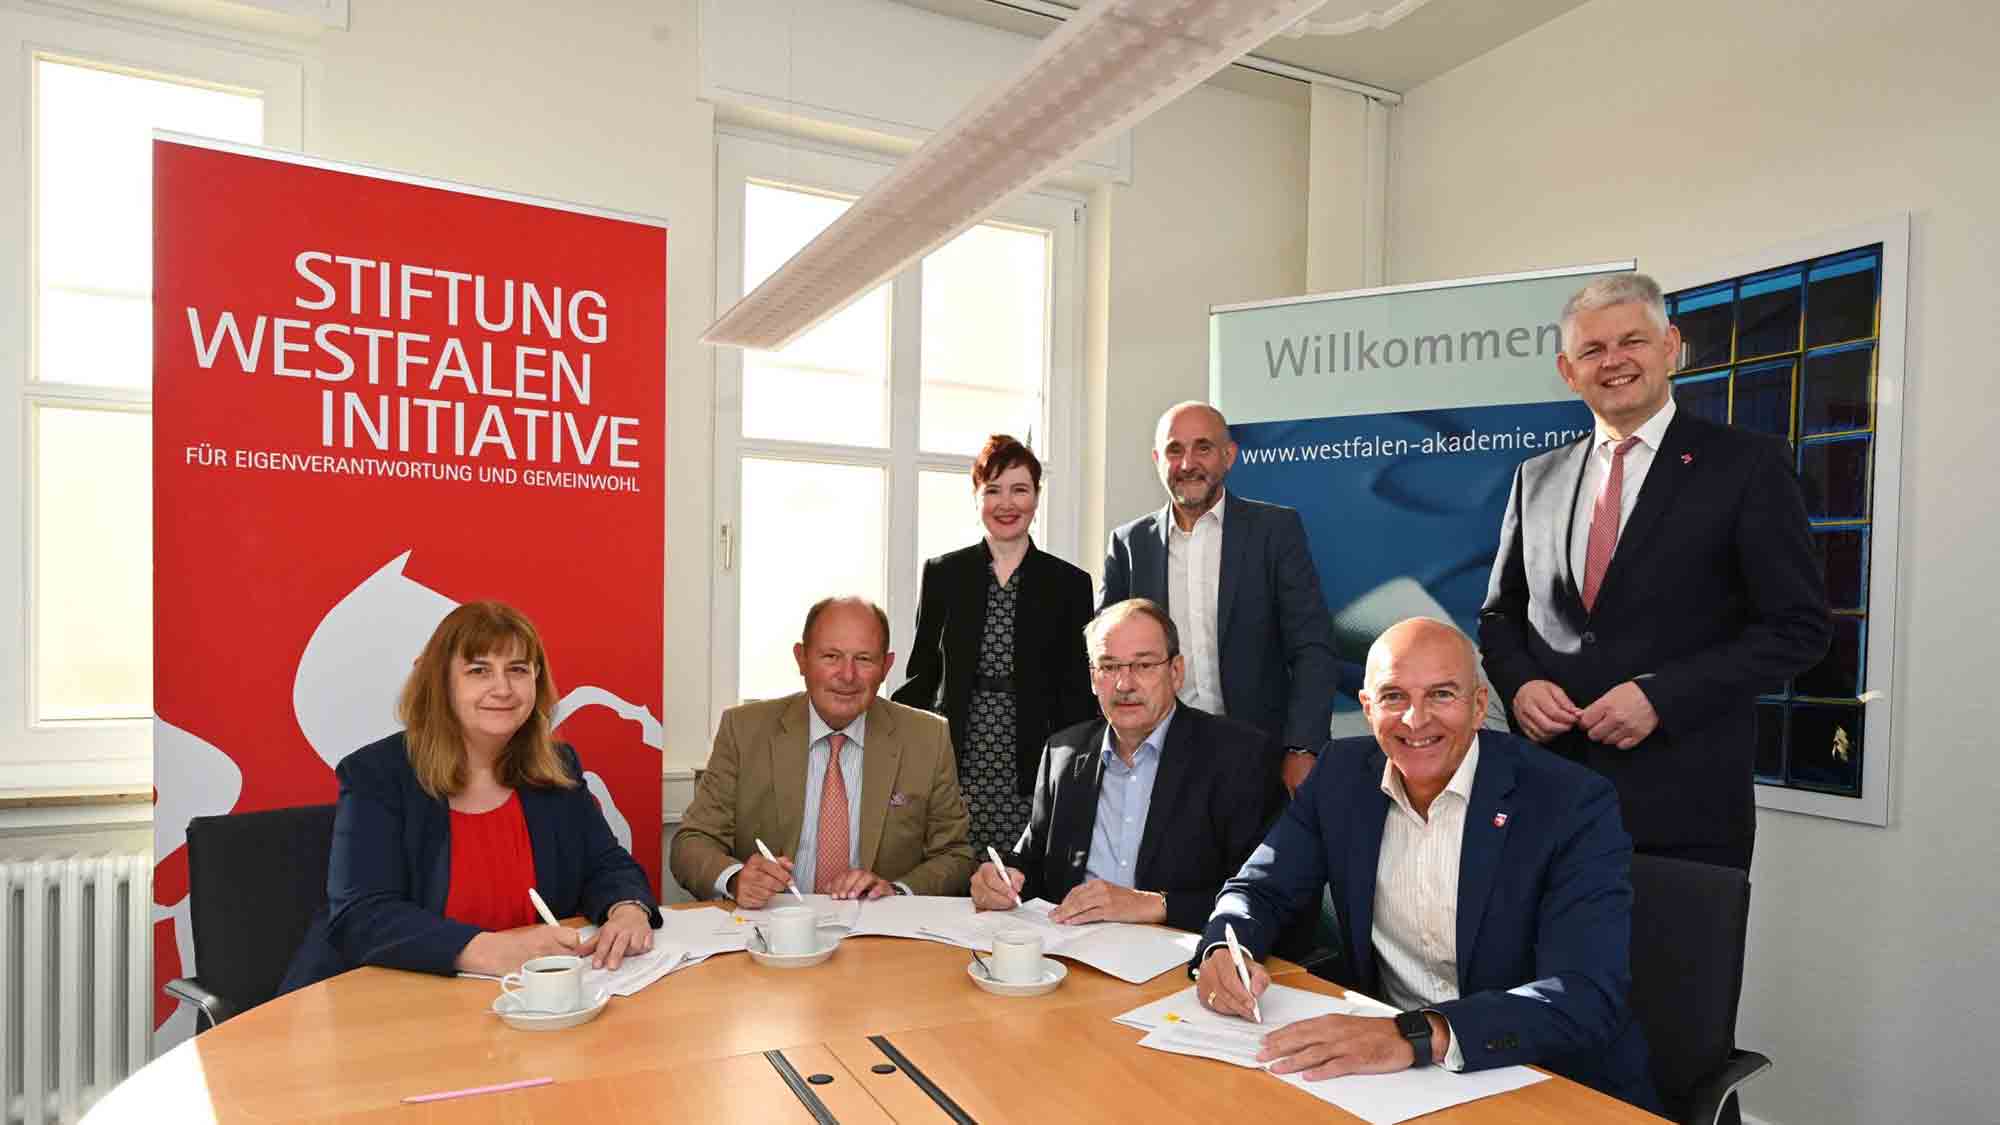 Westfalen Akademie mit neuer Partnerorganisation